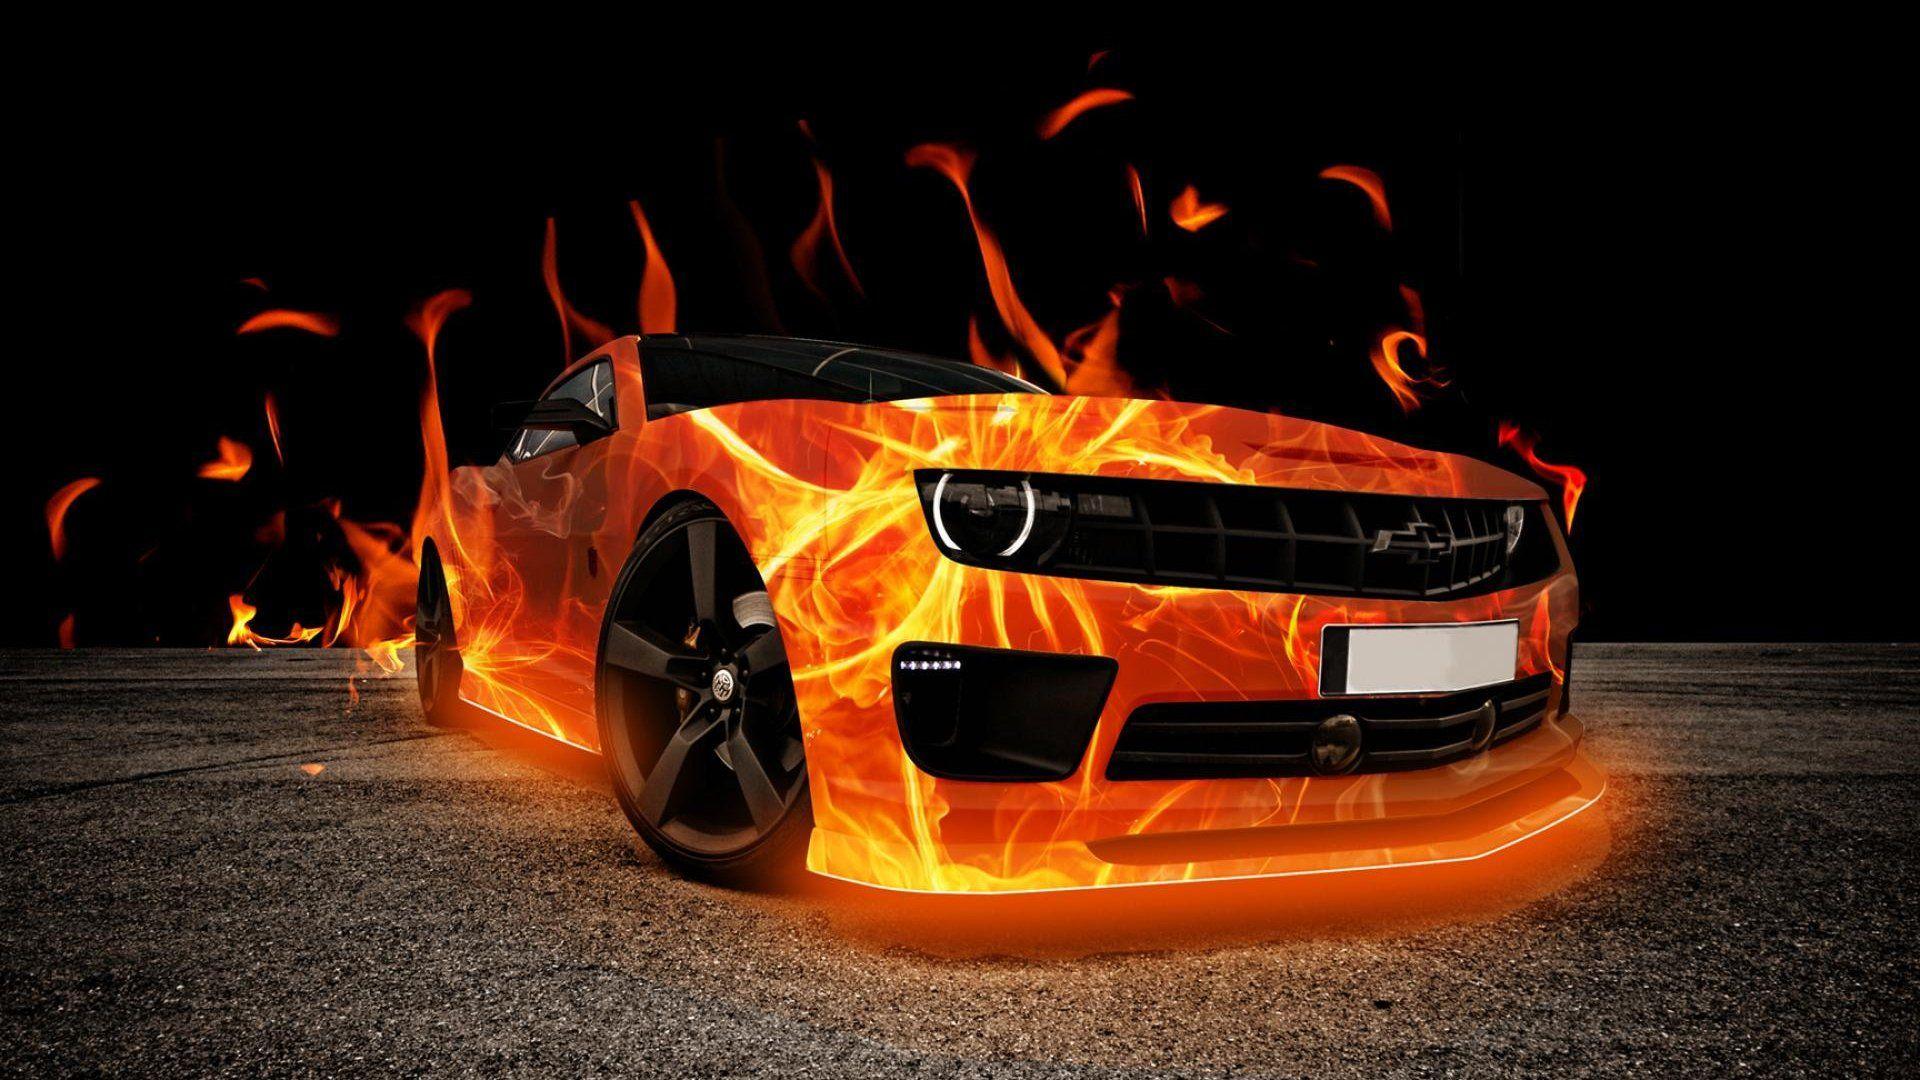 HD 3D Fire Car Wallpaper. Free HD Desktop Wallpaper. Viewhdwall